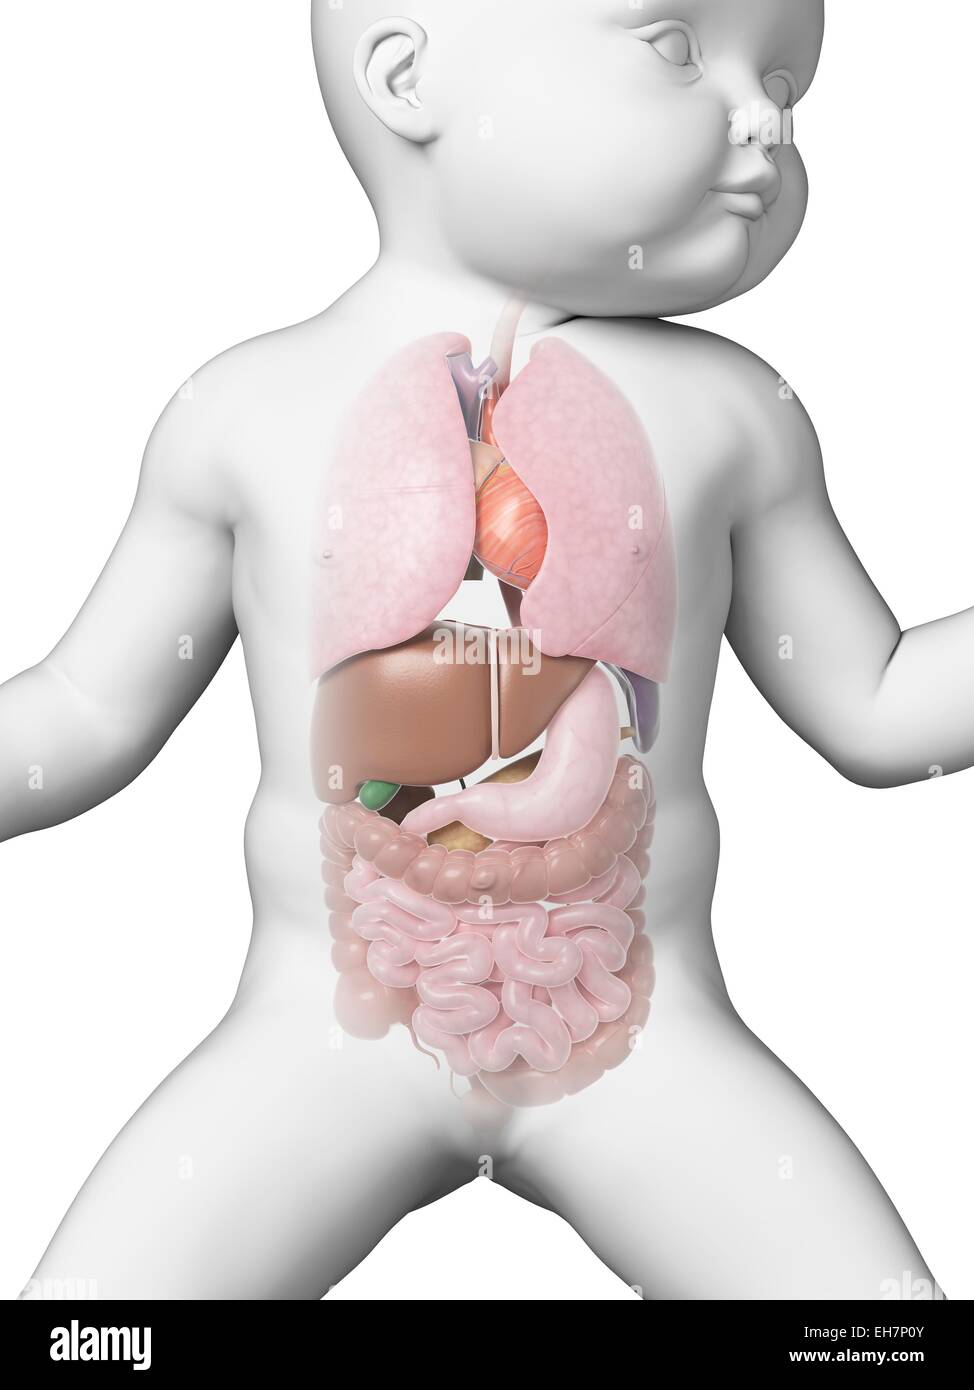 Увеличена печень у новорожденного. Внутренние органы новорожденного. Пищеварительная система младенца. Строение внутренних органов у новорожденного.